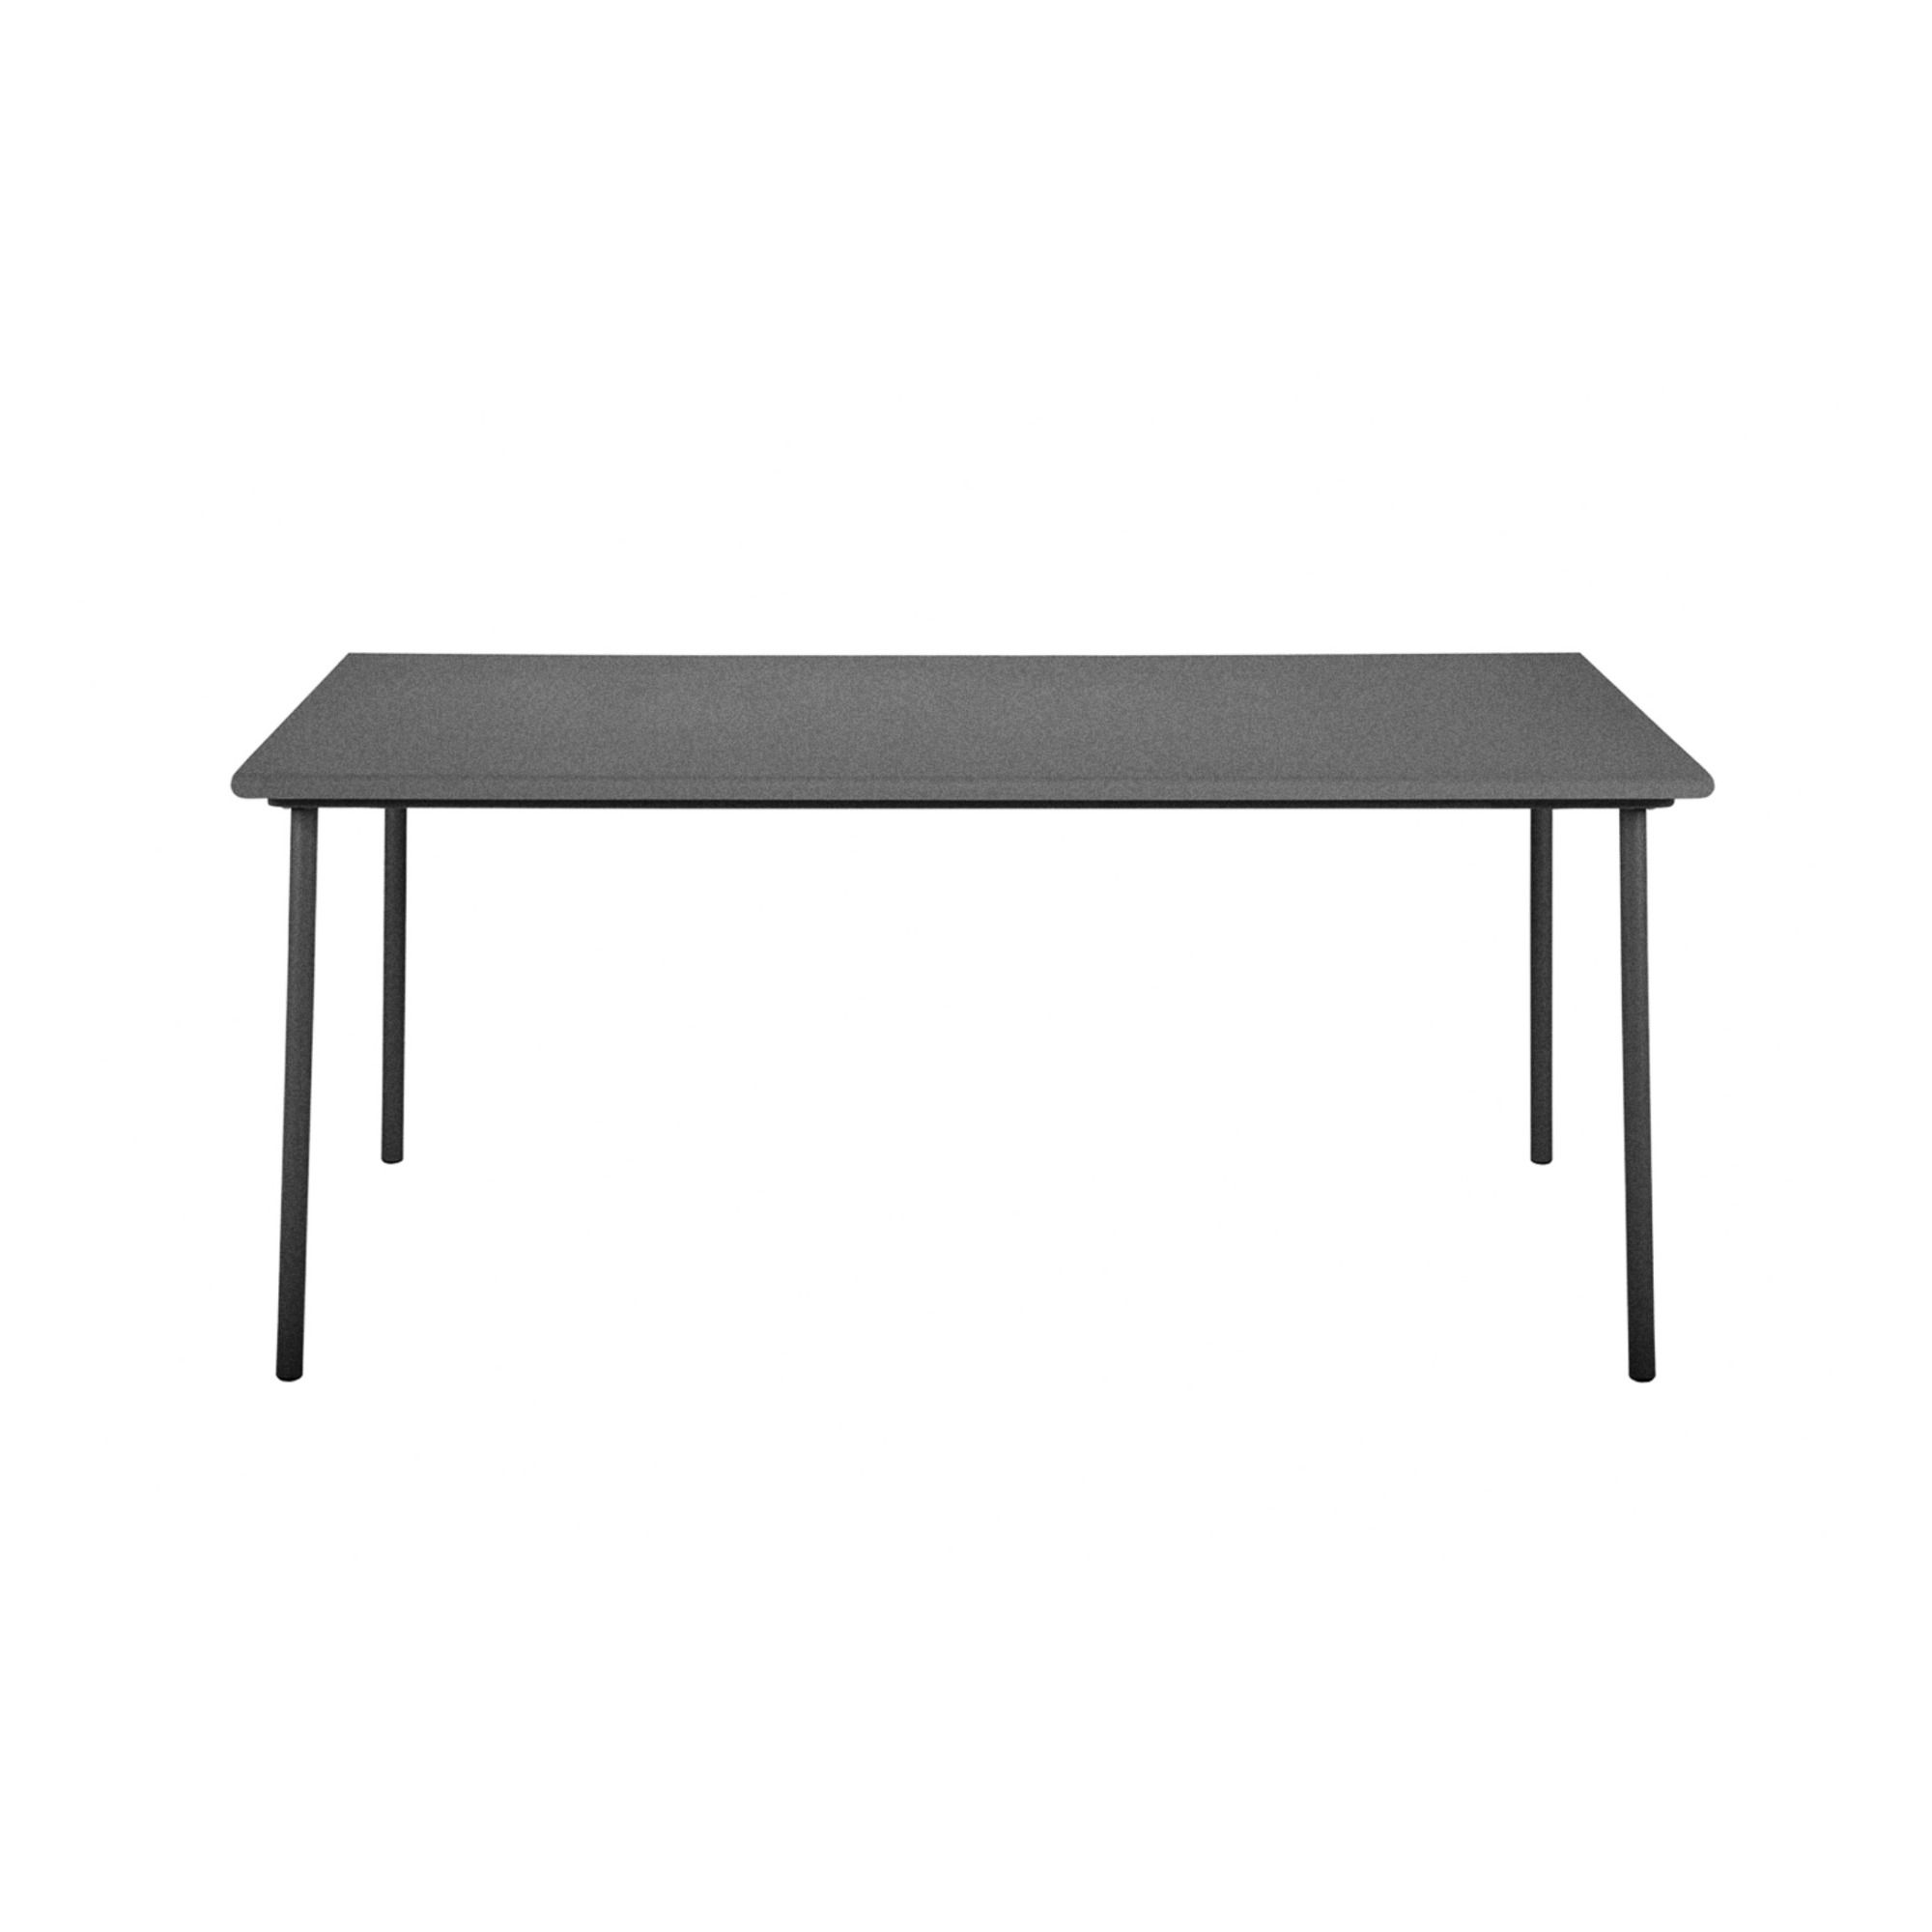 Tolix - Table outdoor Patio en inox - 240x100 cm - Gris graphite